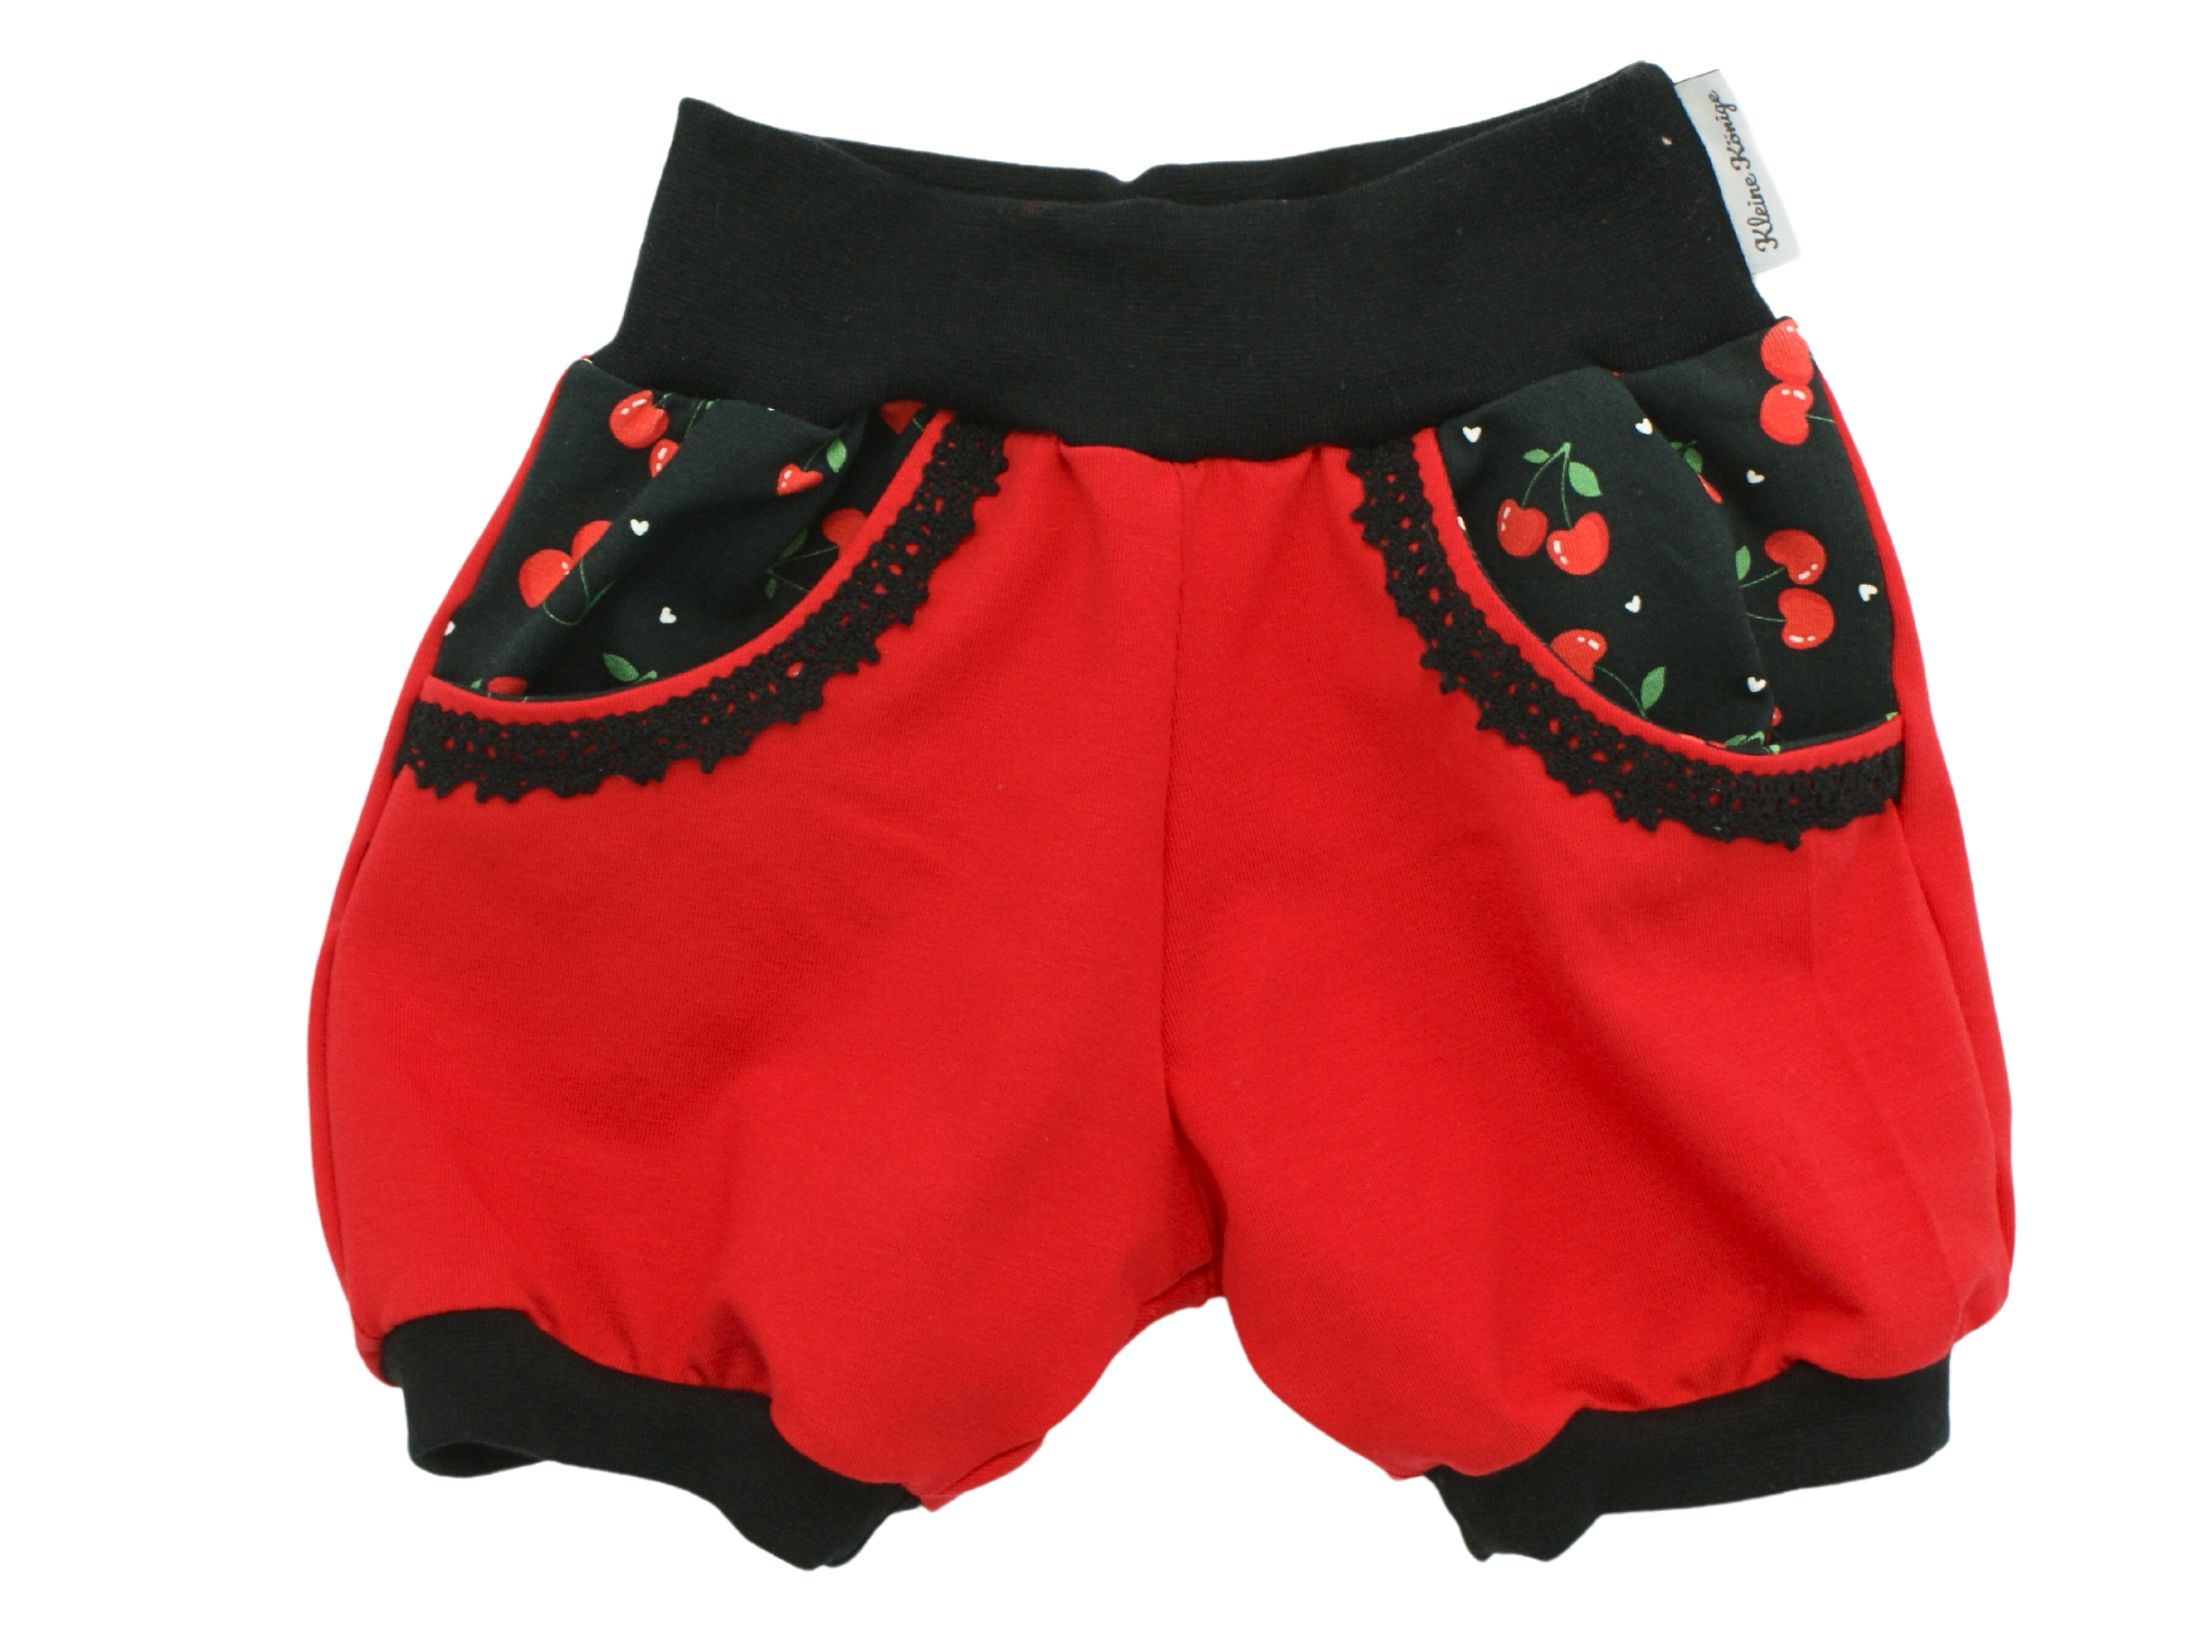 Kinder Sommer Shorts mit Taschen "Minikirschen" rot schwarz